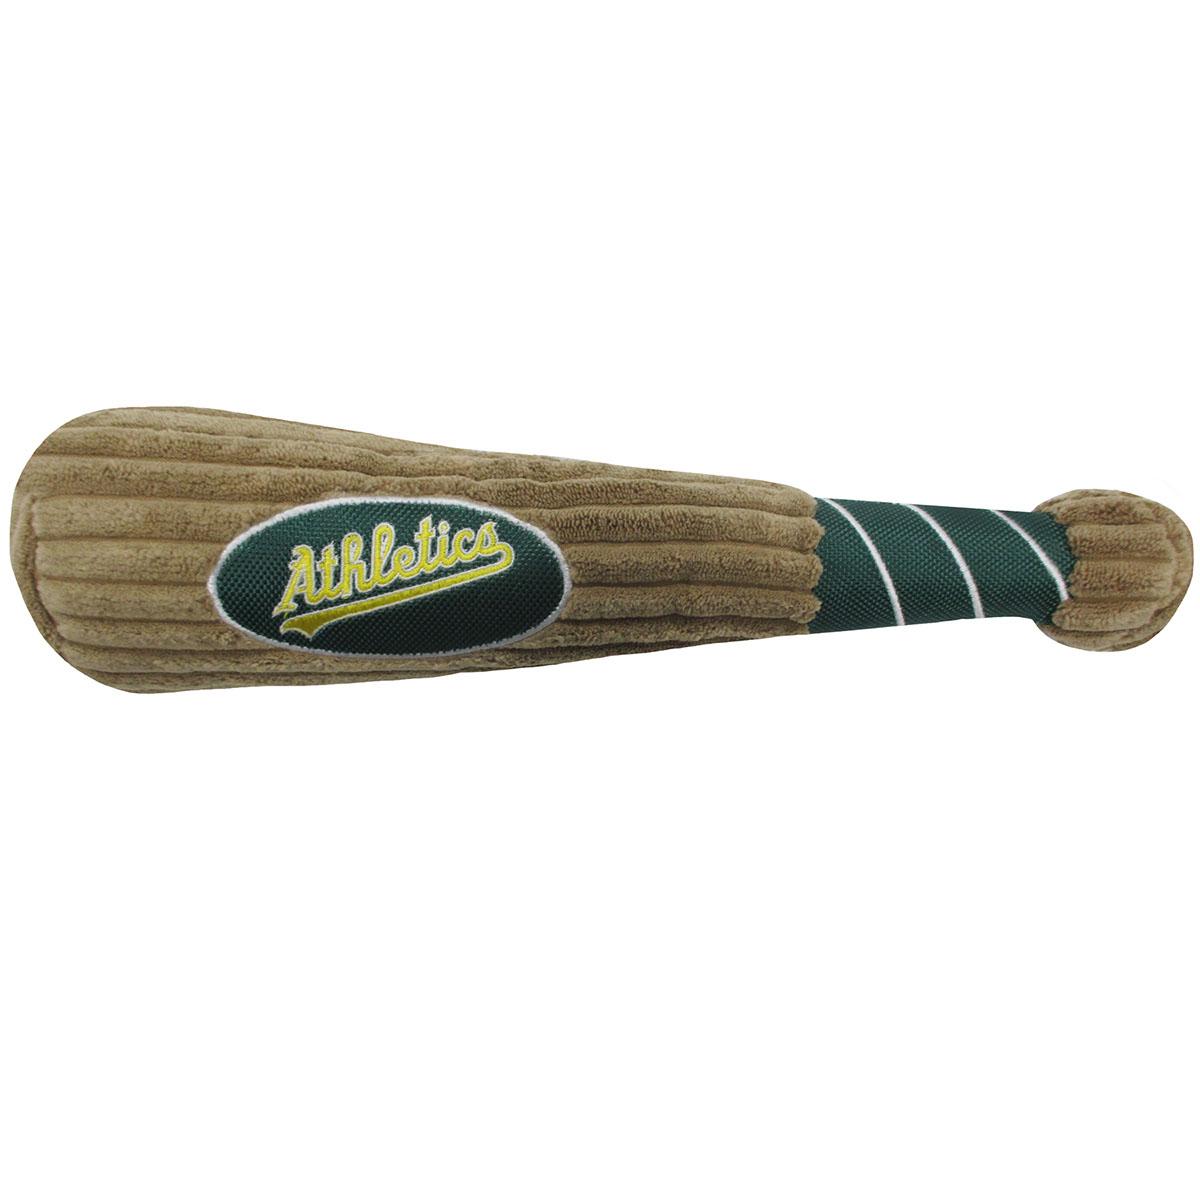 Oakland Athletics Plush Baseball Bat Dog Toy